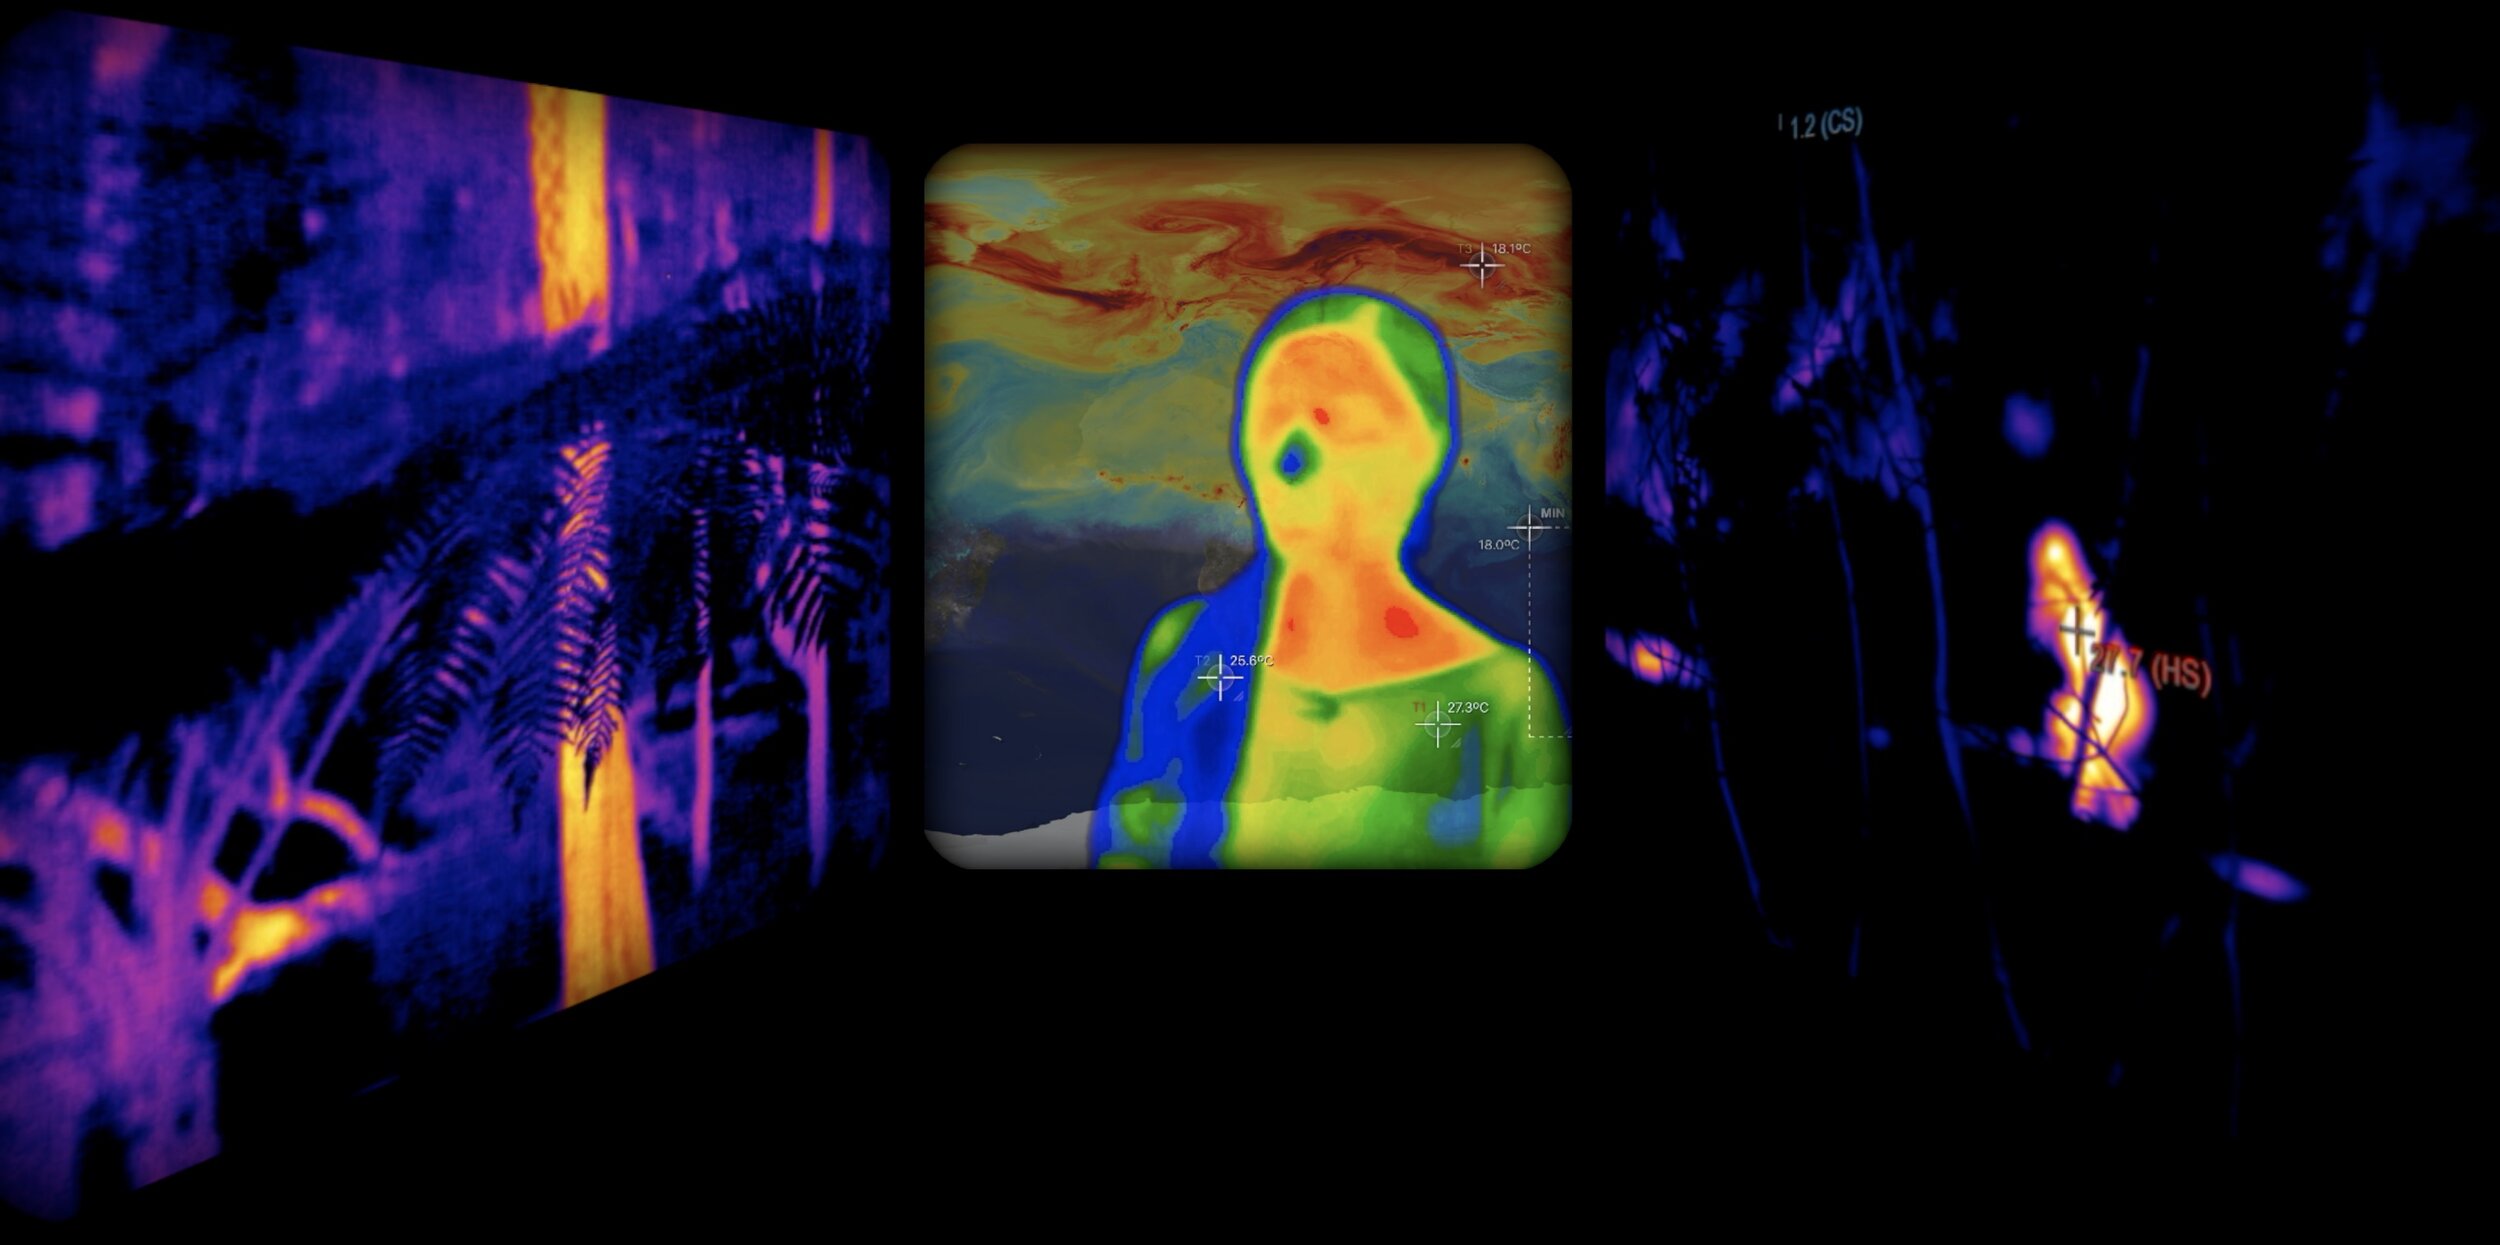 Thermal imaging video